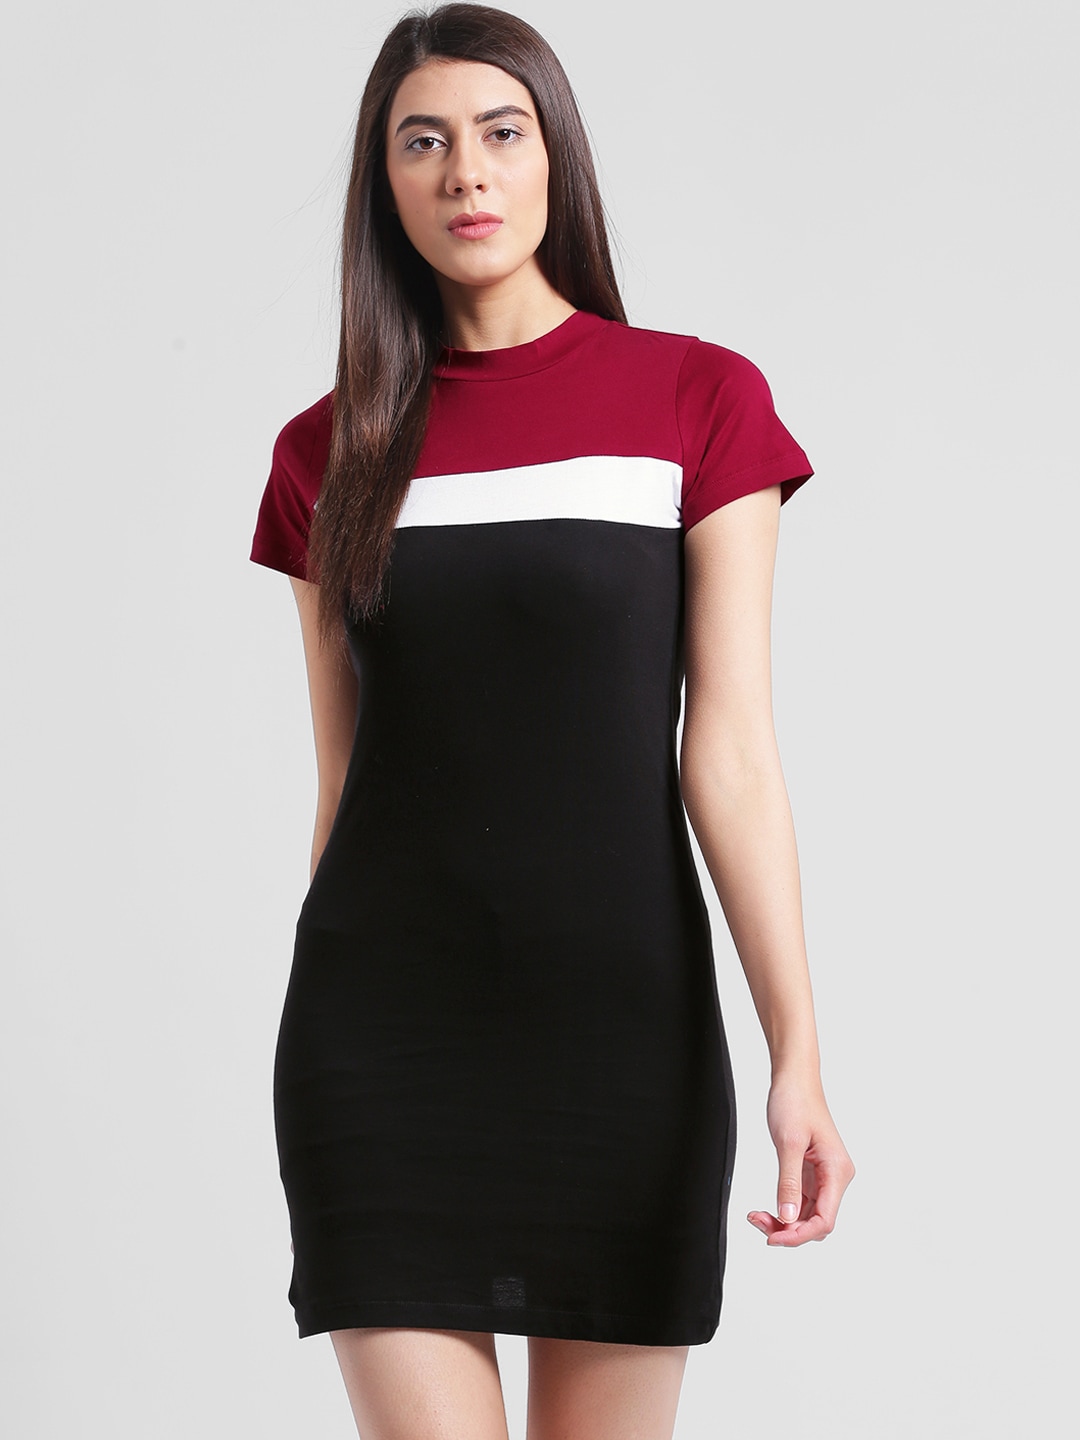 Rigo Black & Maroon Colourblocked Knitted T-shirt Dress